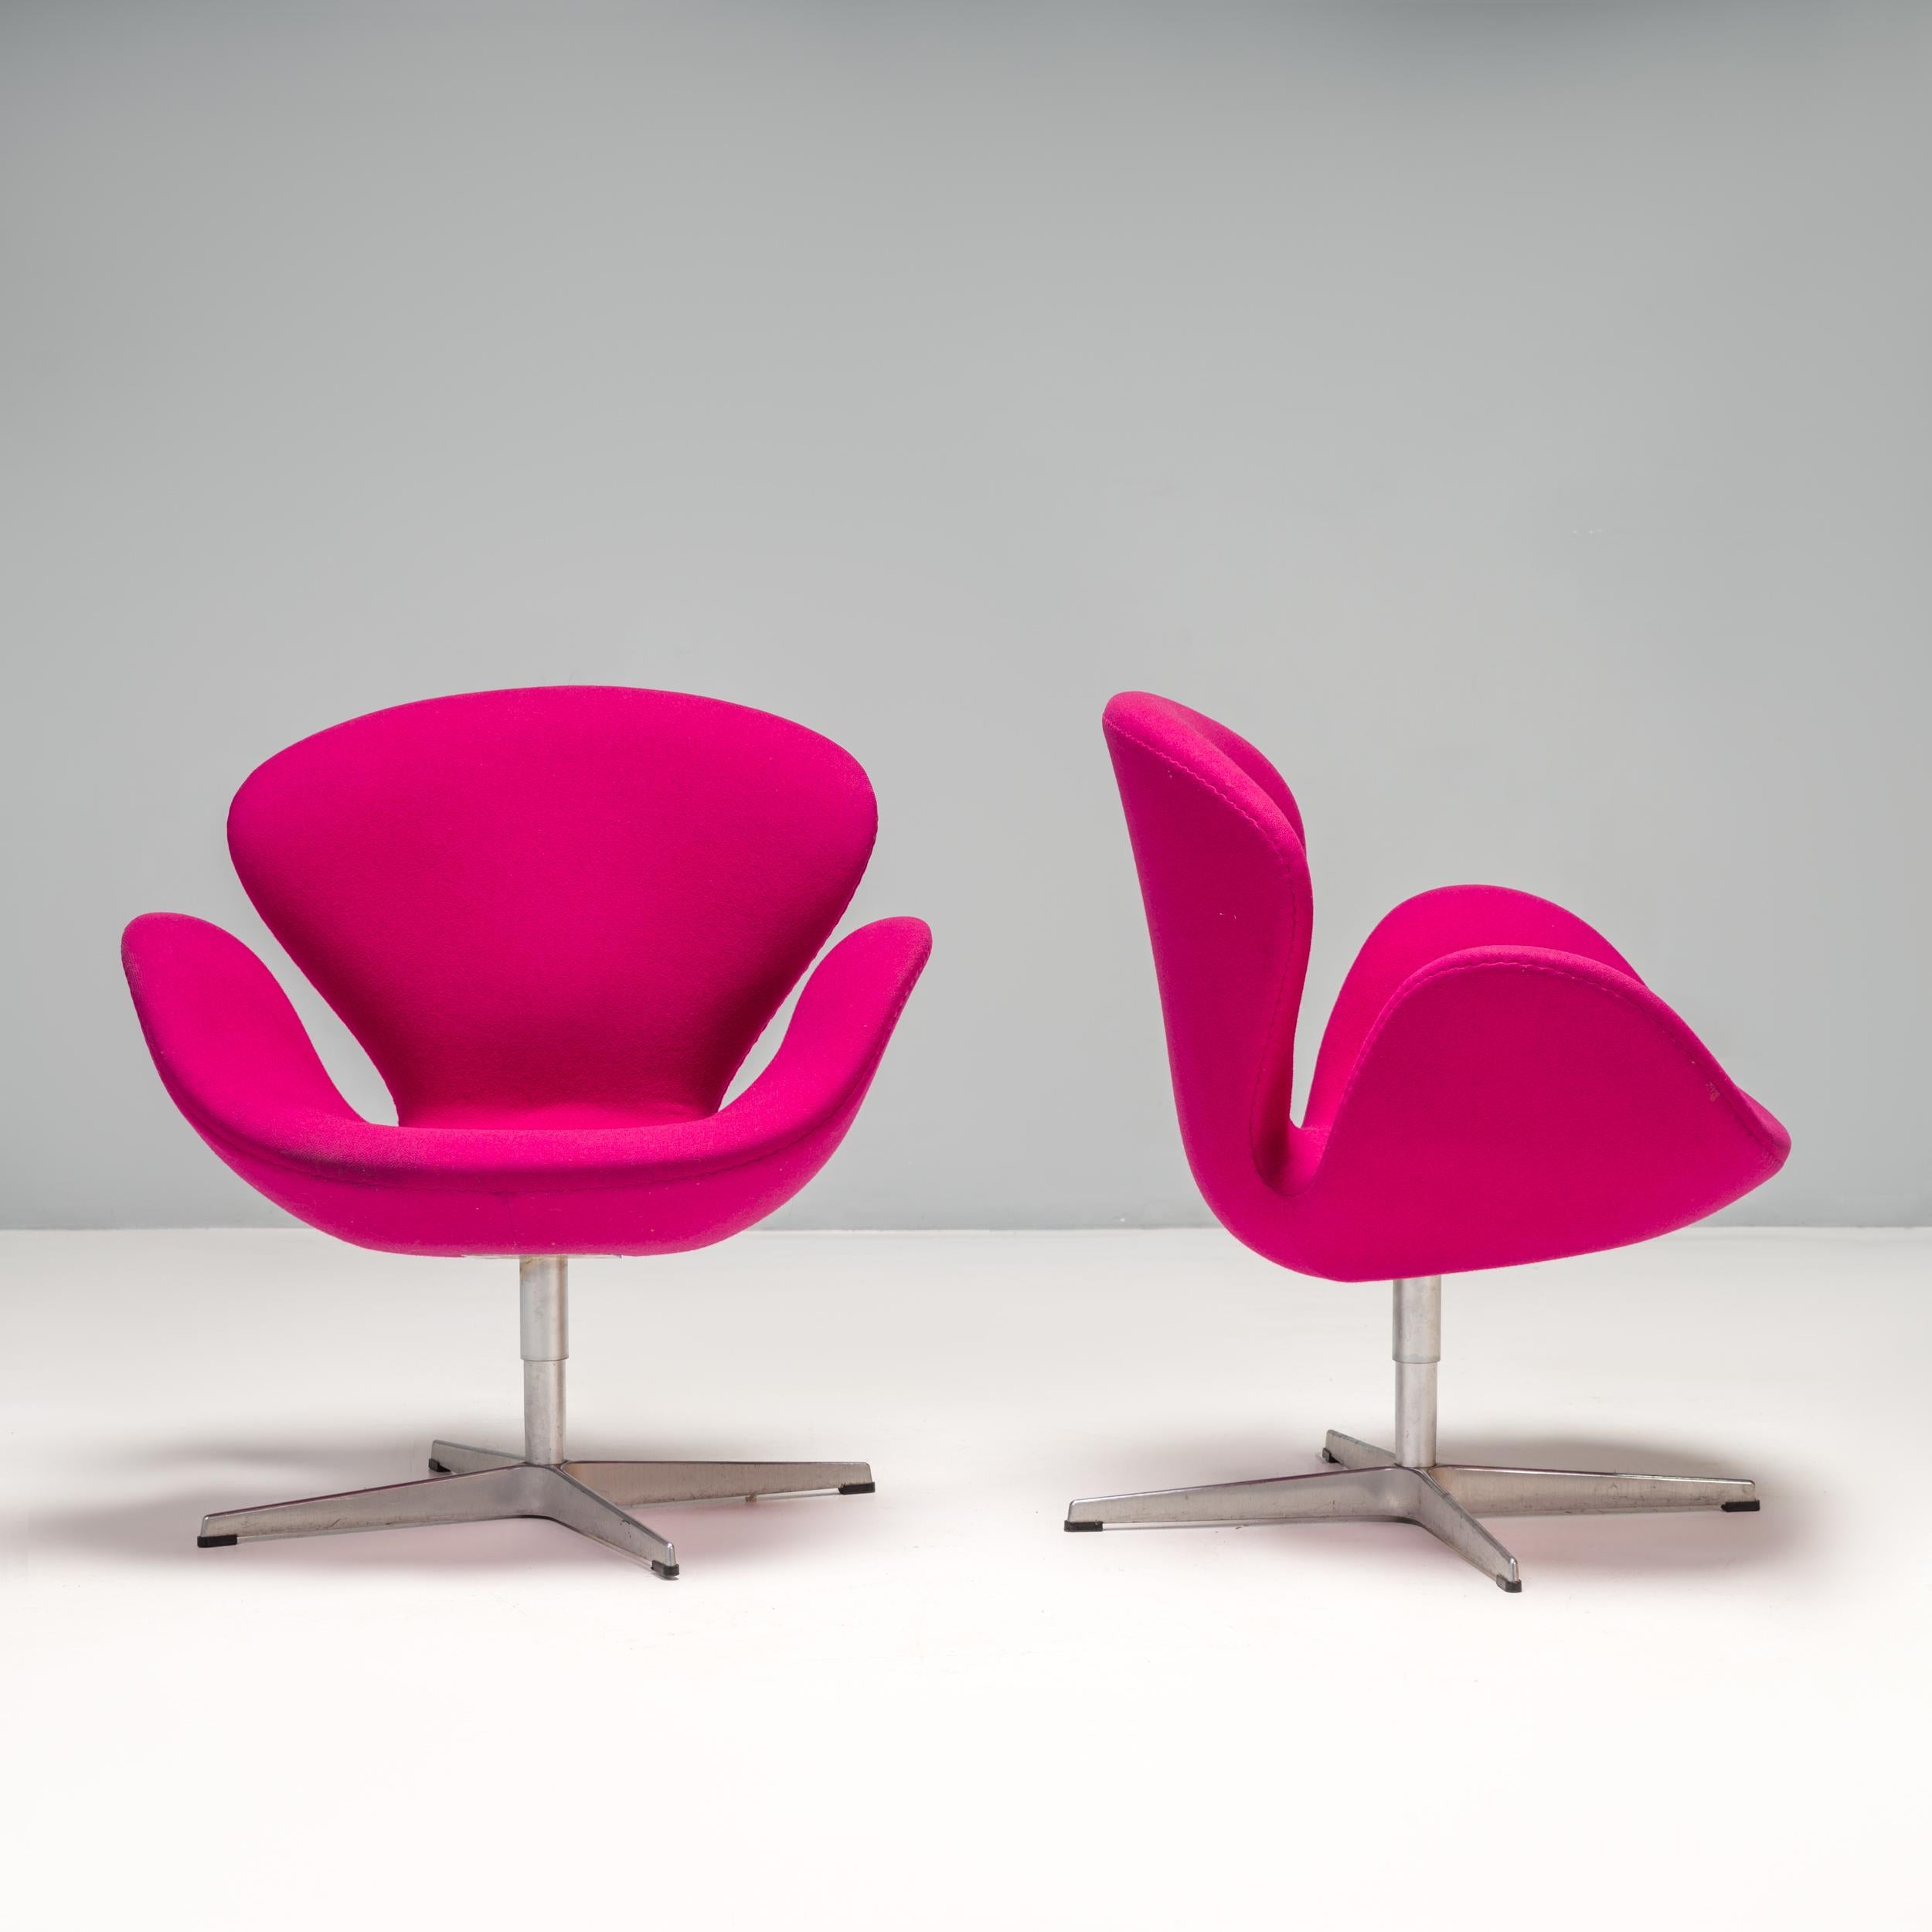 Conçu à l'origine par Arne Jacobsen en 1958 pour le SAS Royal Hotel de Copenhague, le fauteuil cygne était révolutionnaire à l'époque et est devenu un véritable classique.

La silhouette galbée crée un siège enveloppant avec des accoudoirs et des